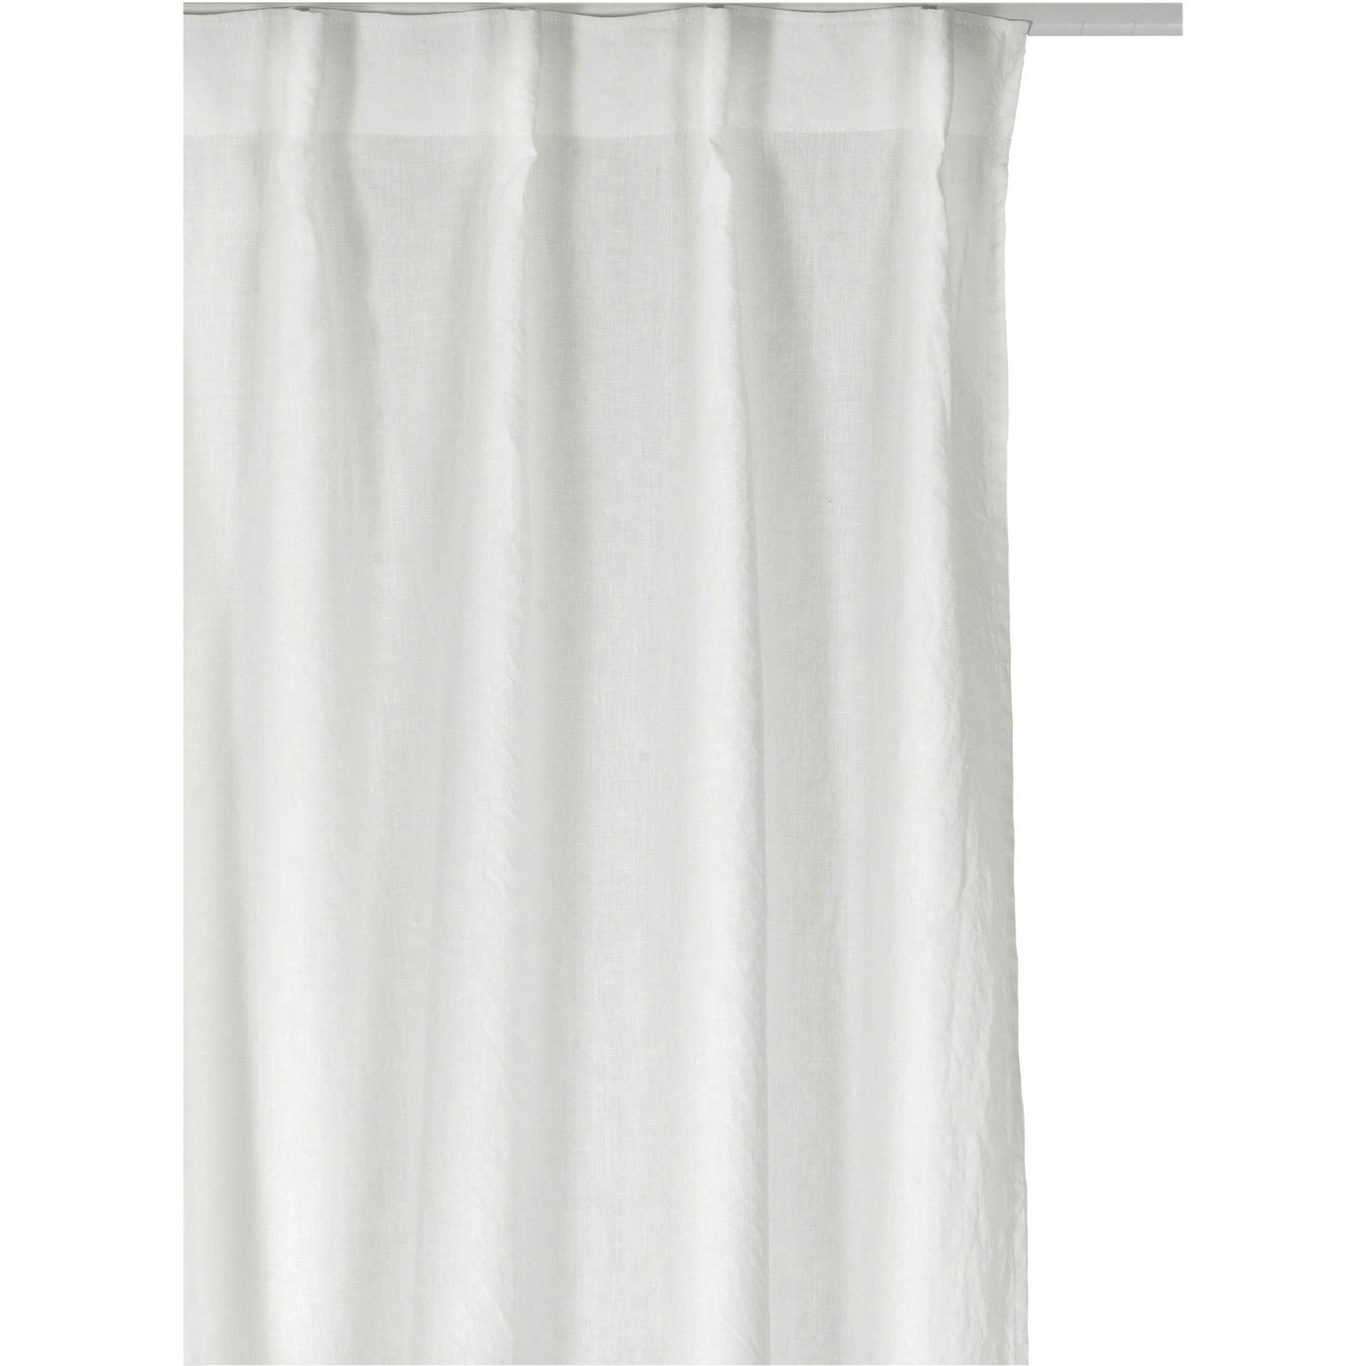 Sunrise Vorhang mit Faltenband 280x290 cm, Weiß